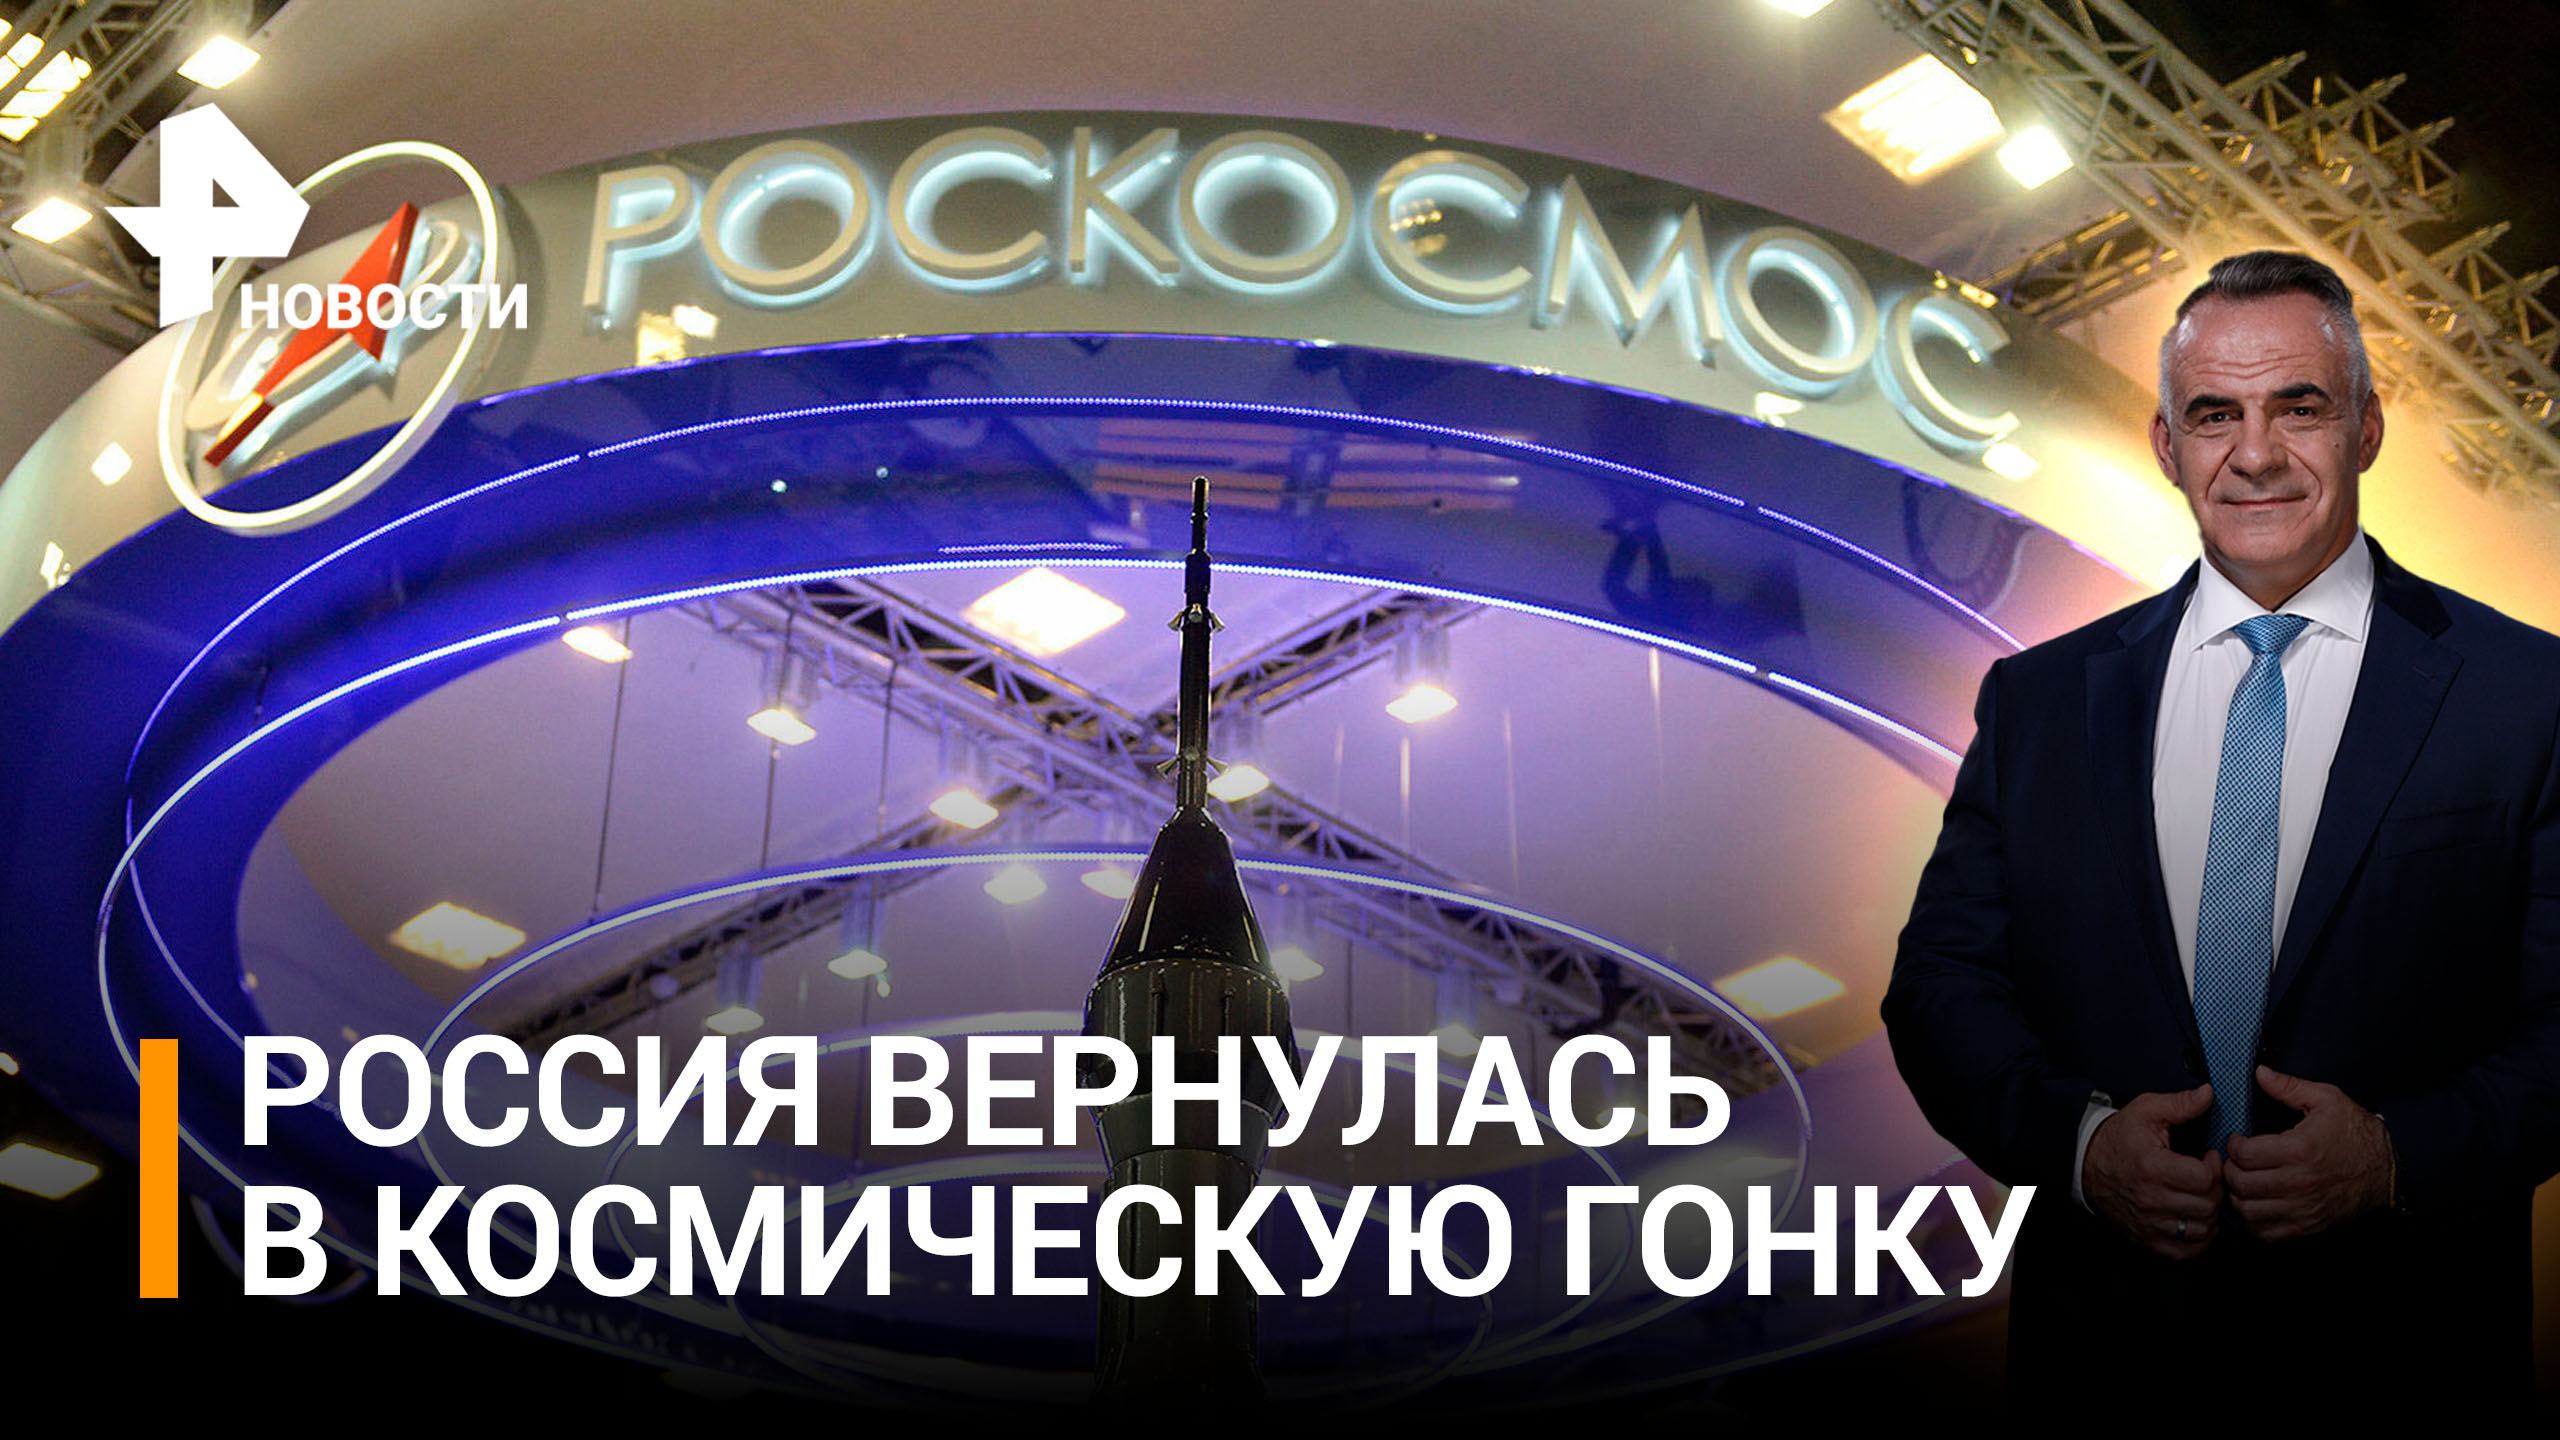 Россия триумфально возвращается в гонку космических технологий / Итоги с Петром Марченко